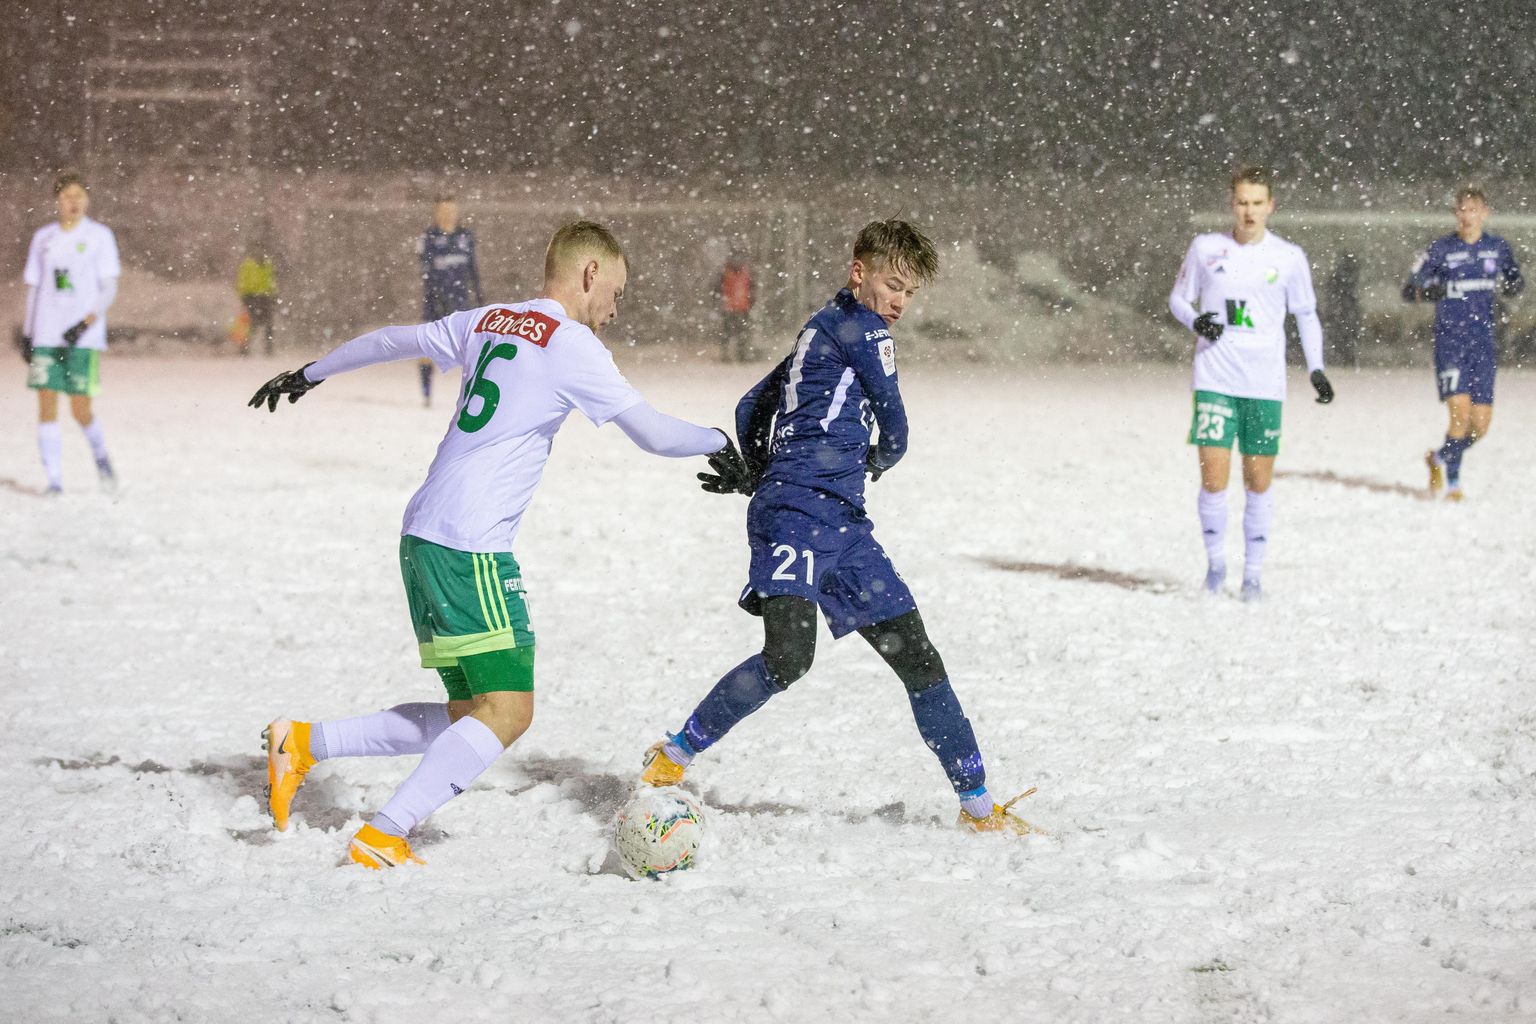 Eelmise aasta märtsis sadas Paide Linnameeskonna U21 mängu ajal ootamatult maha paks lumi ning kohtumine Levadiaga sarnanes lumes müttamisele mitte jalgpallile.